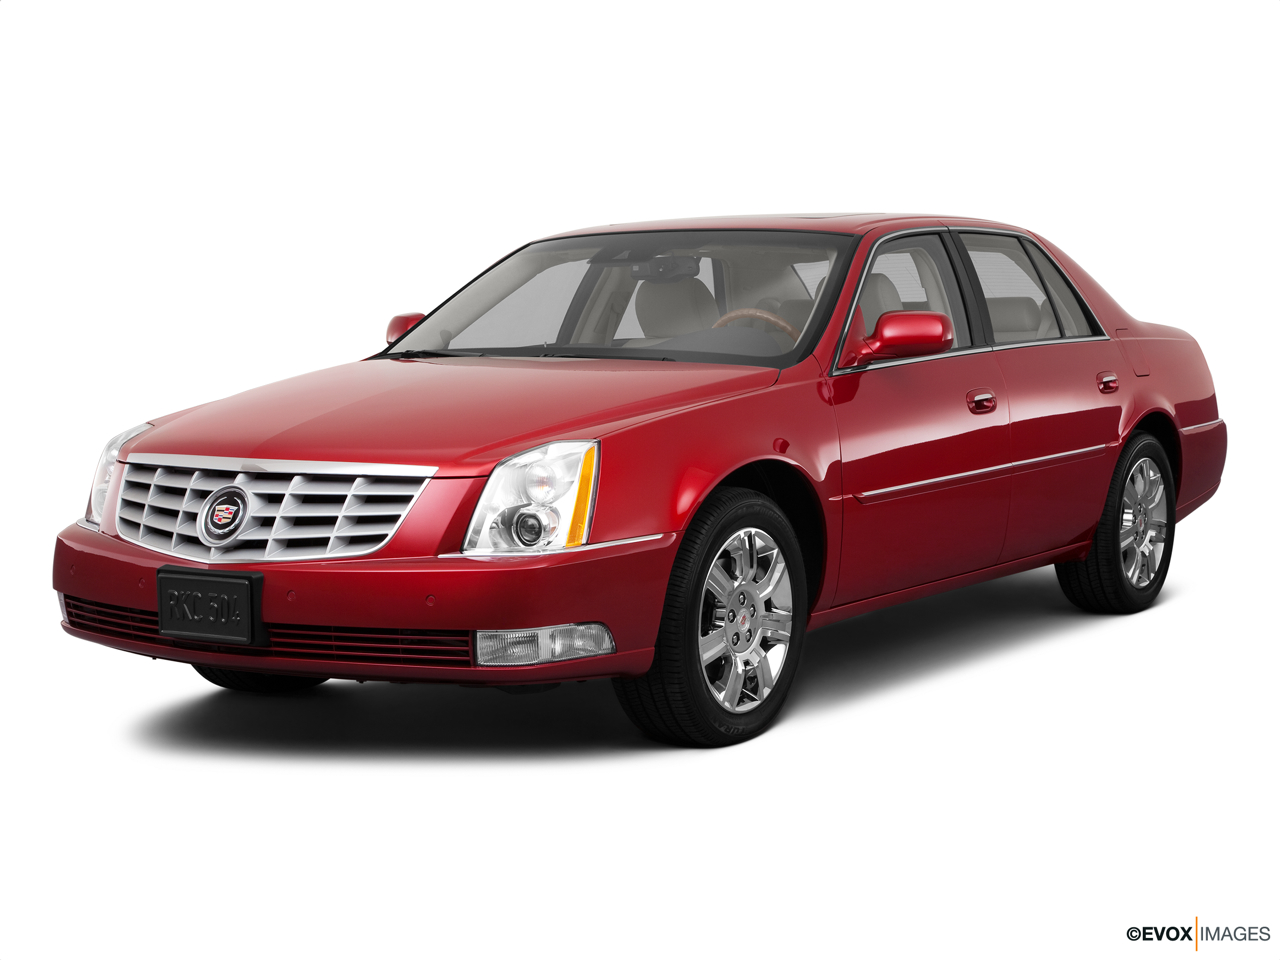 2011 Cadillac DTS Platinum 114 - no description